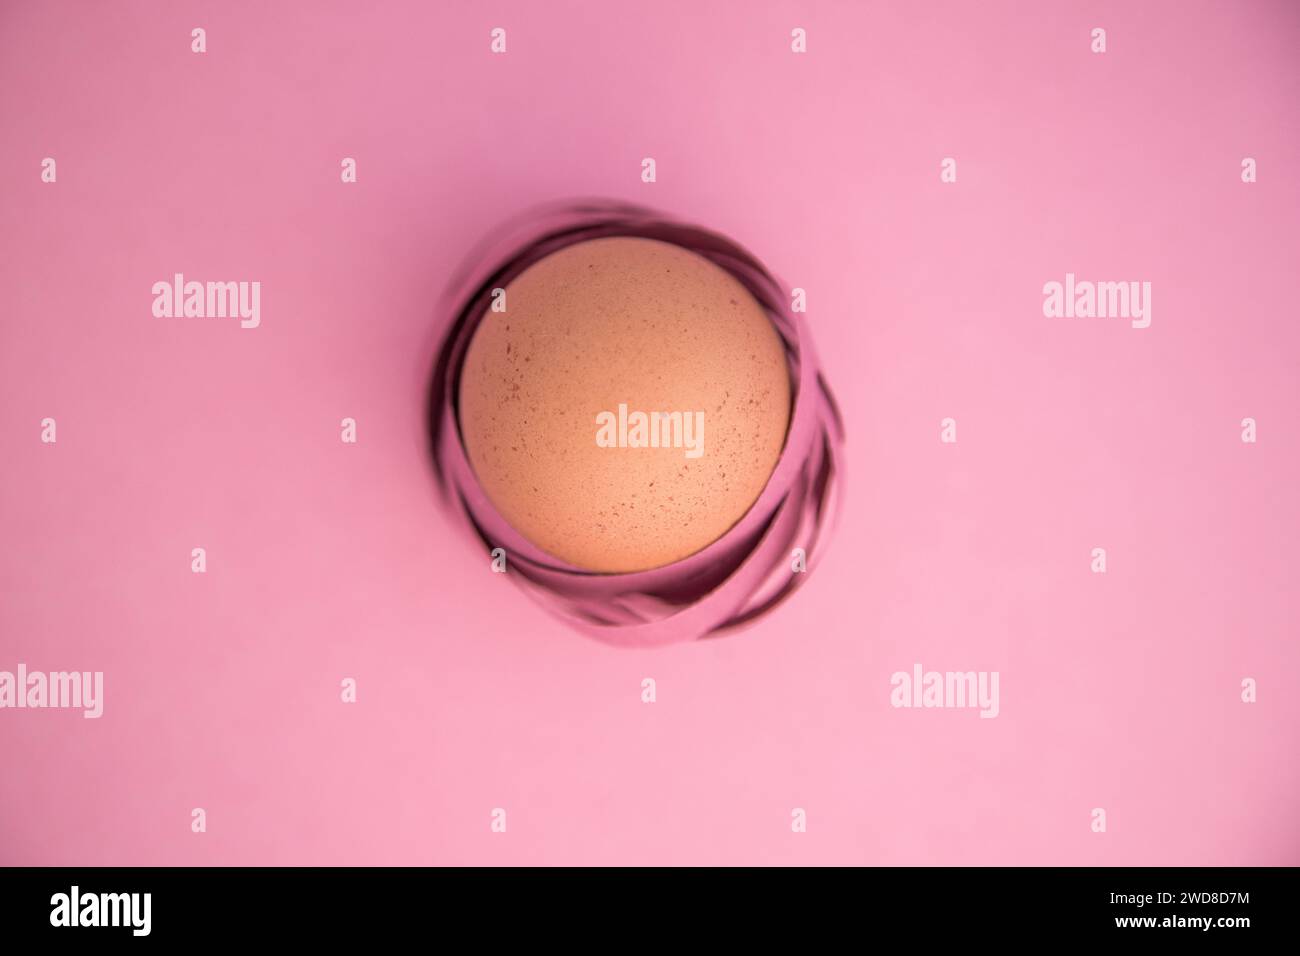 Joyeuses Pâques. Gros plan minimaliste d'un œuf enveloppé dans des rubans colorés comme s'il s'agissait d'un nid. Isolé sur fond rose. Banque D'Images